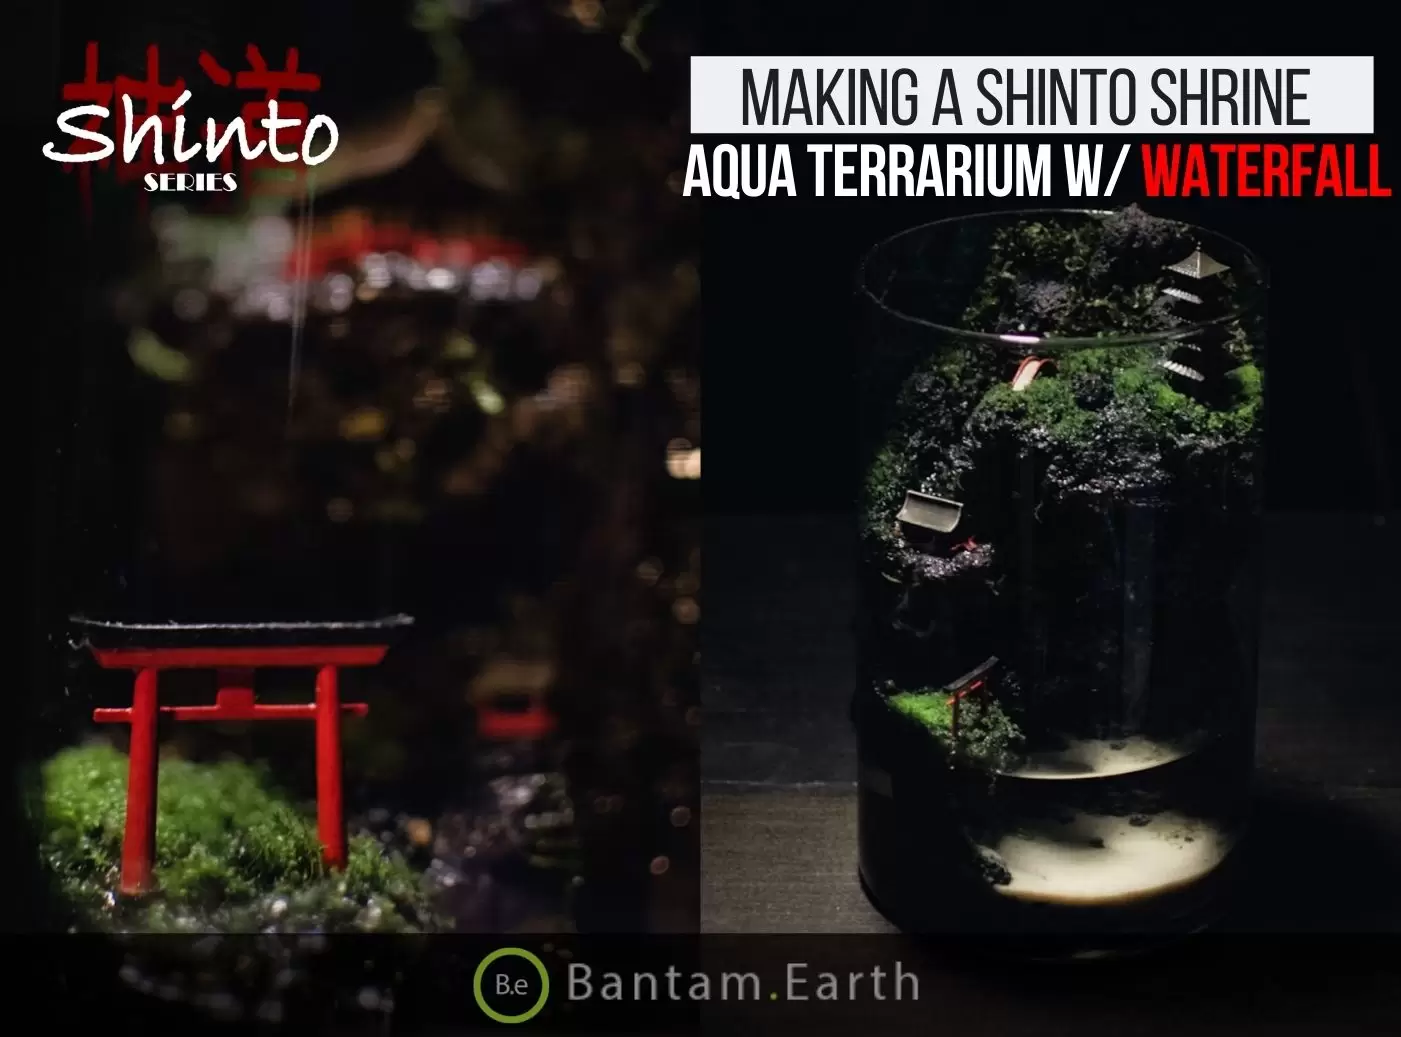 Making A Shinto Shrine Aqua Terrarium with a Waterfall